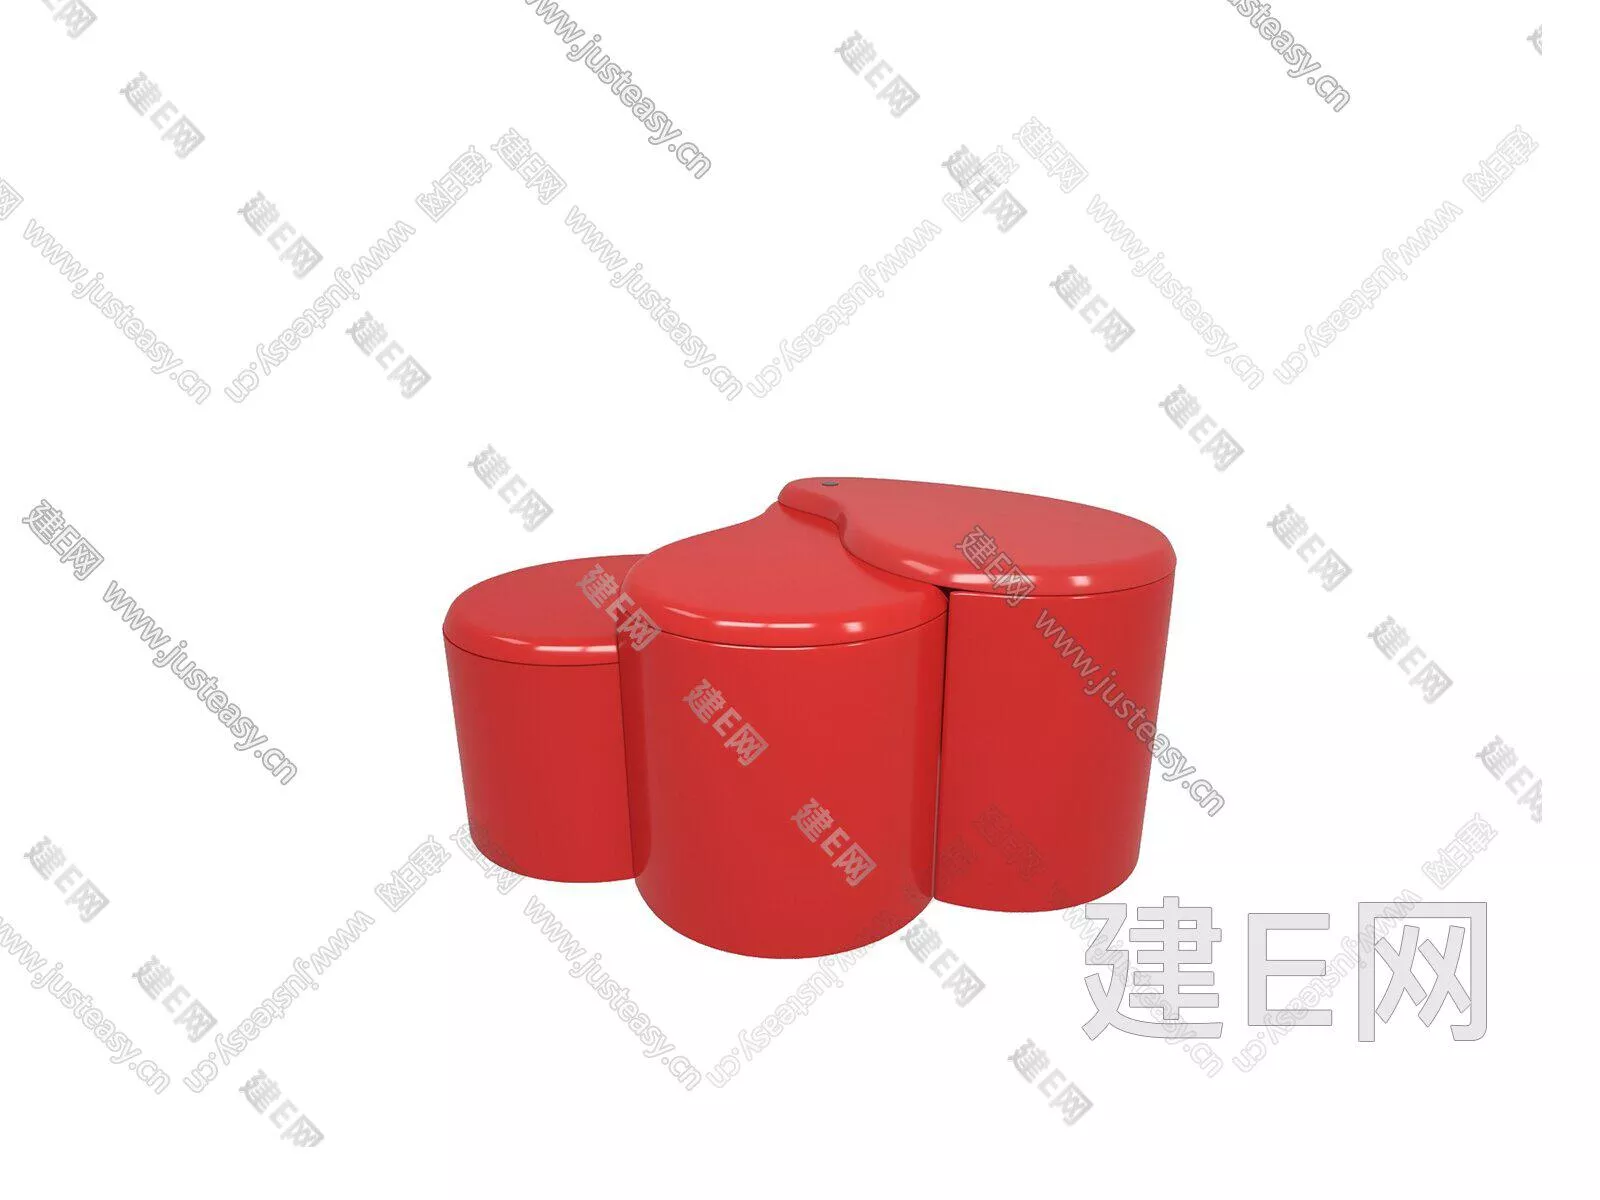 MODERN SIDE TABLE - SKETCHUP 3D MODEL - ENSCAPE - 104941800